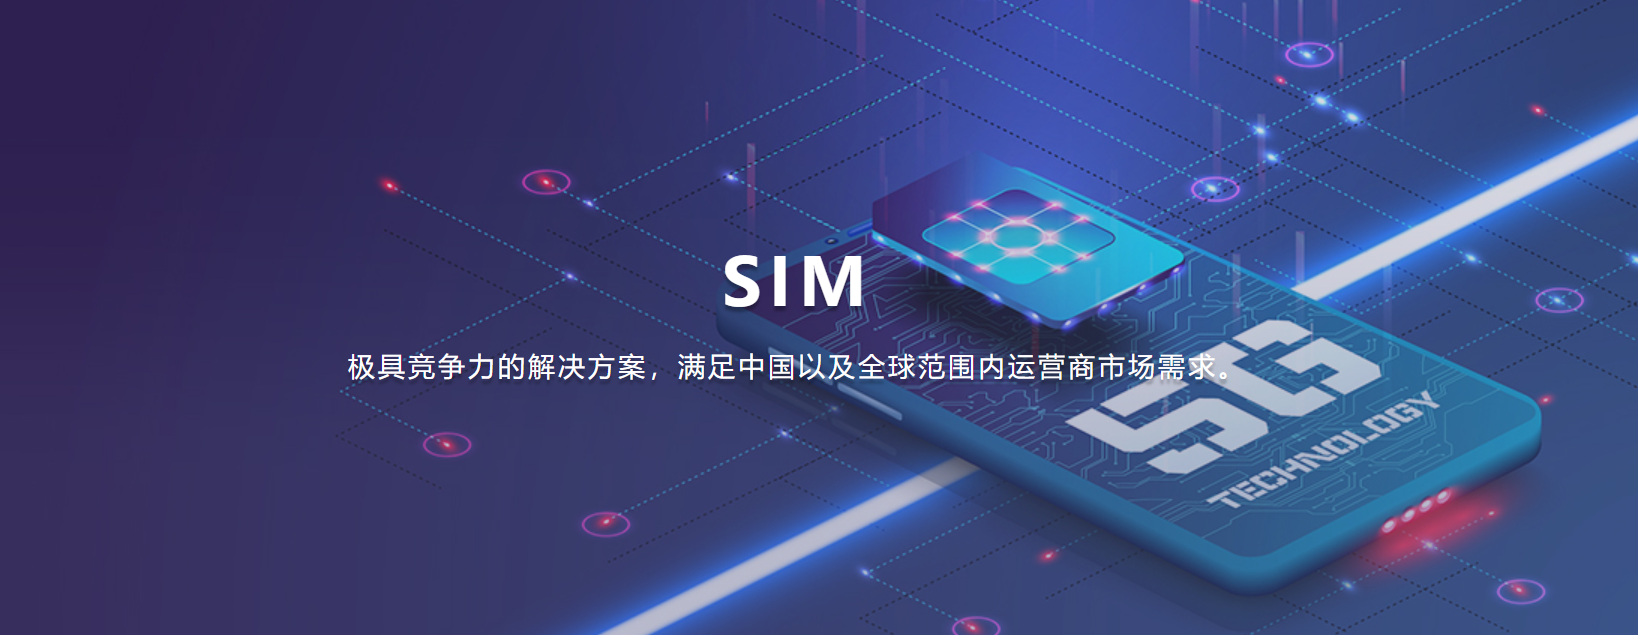 SIM芯片